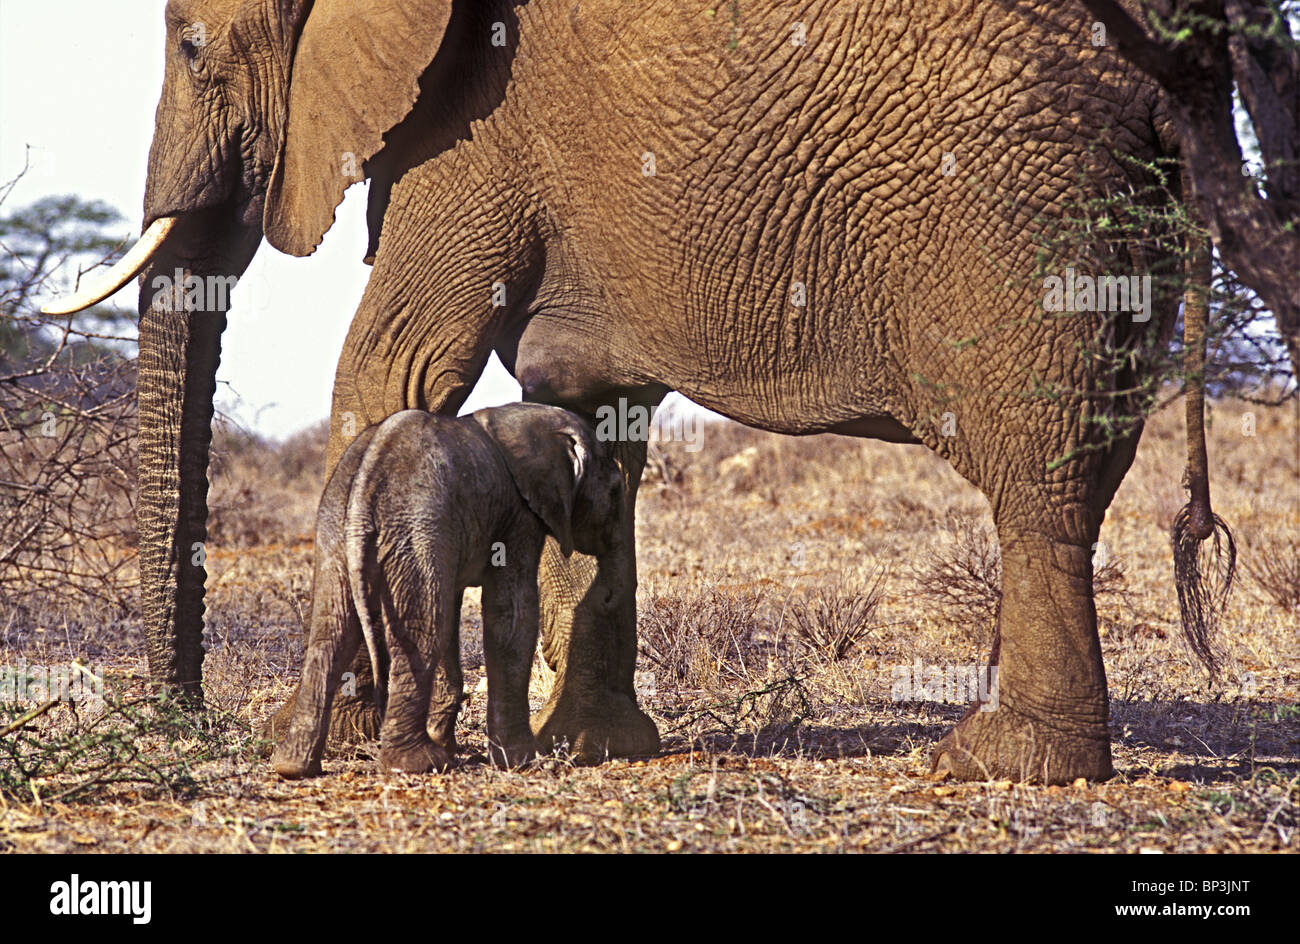 New Born Baby Elephant calf seulement quelques heures debout près de la réserve nationale de Samburu Kenya Afrique de l'Est Banque D'Images